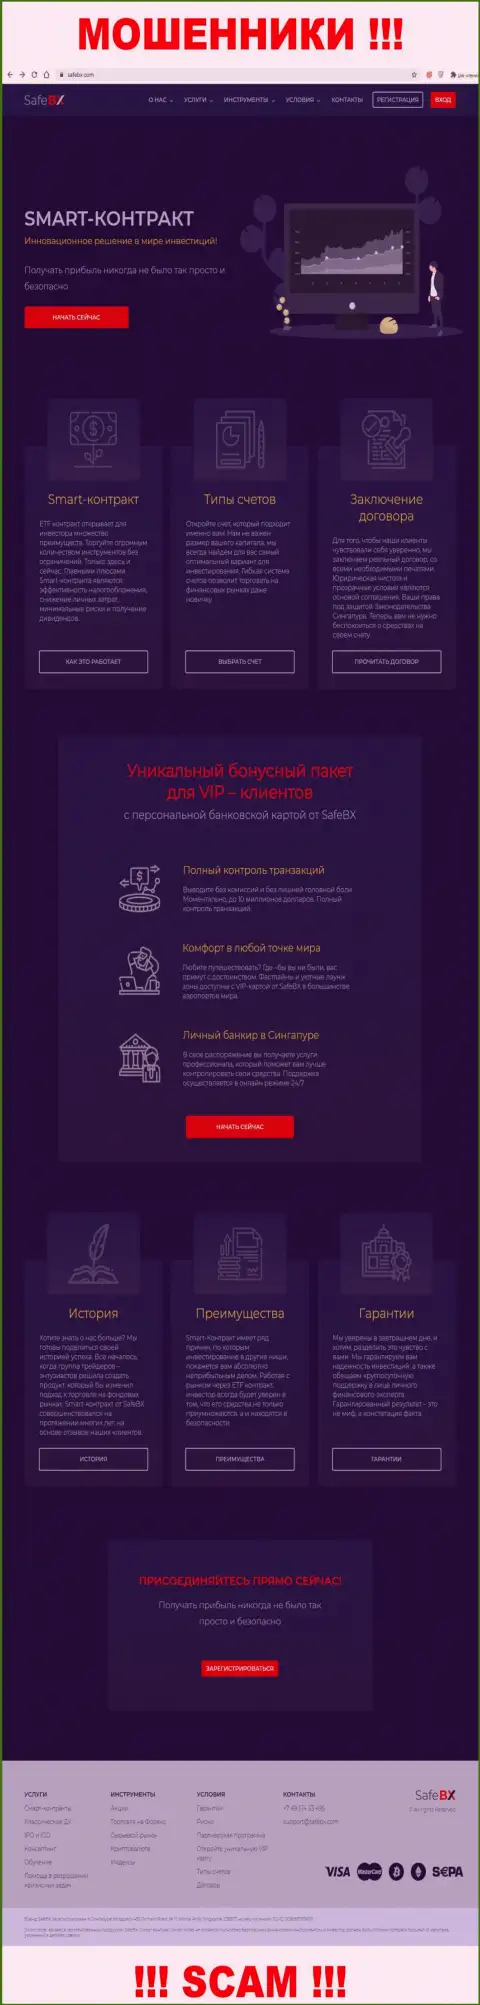 Скрин официального web-ресурса SafeBX - SafeBX Com